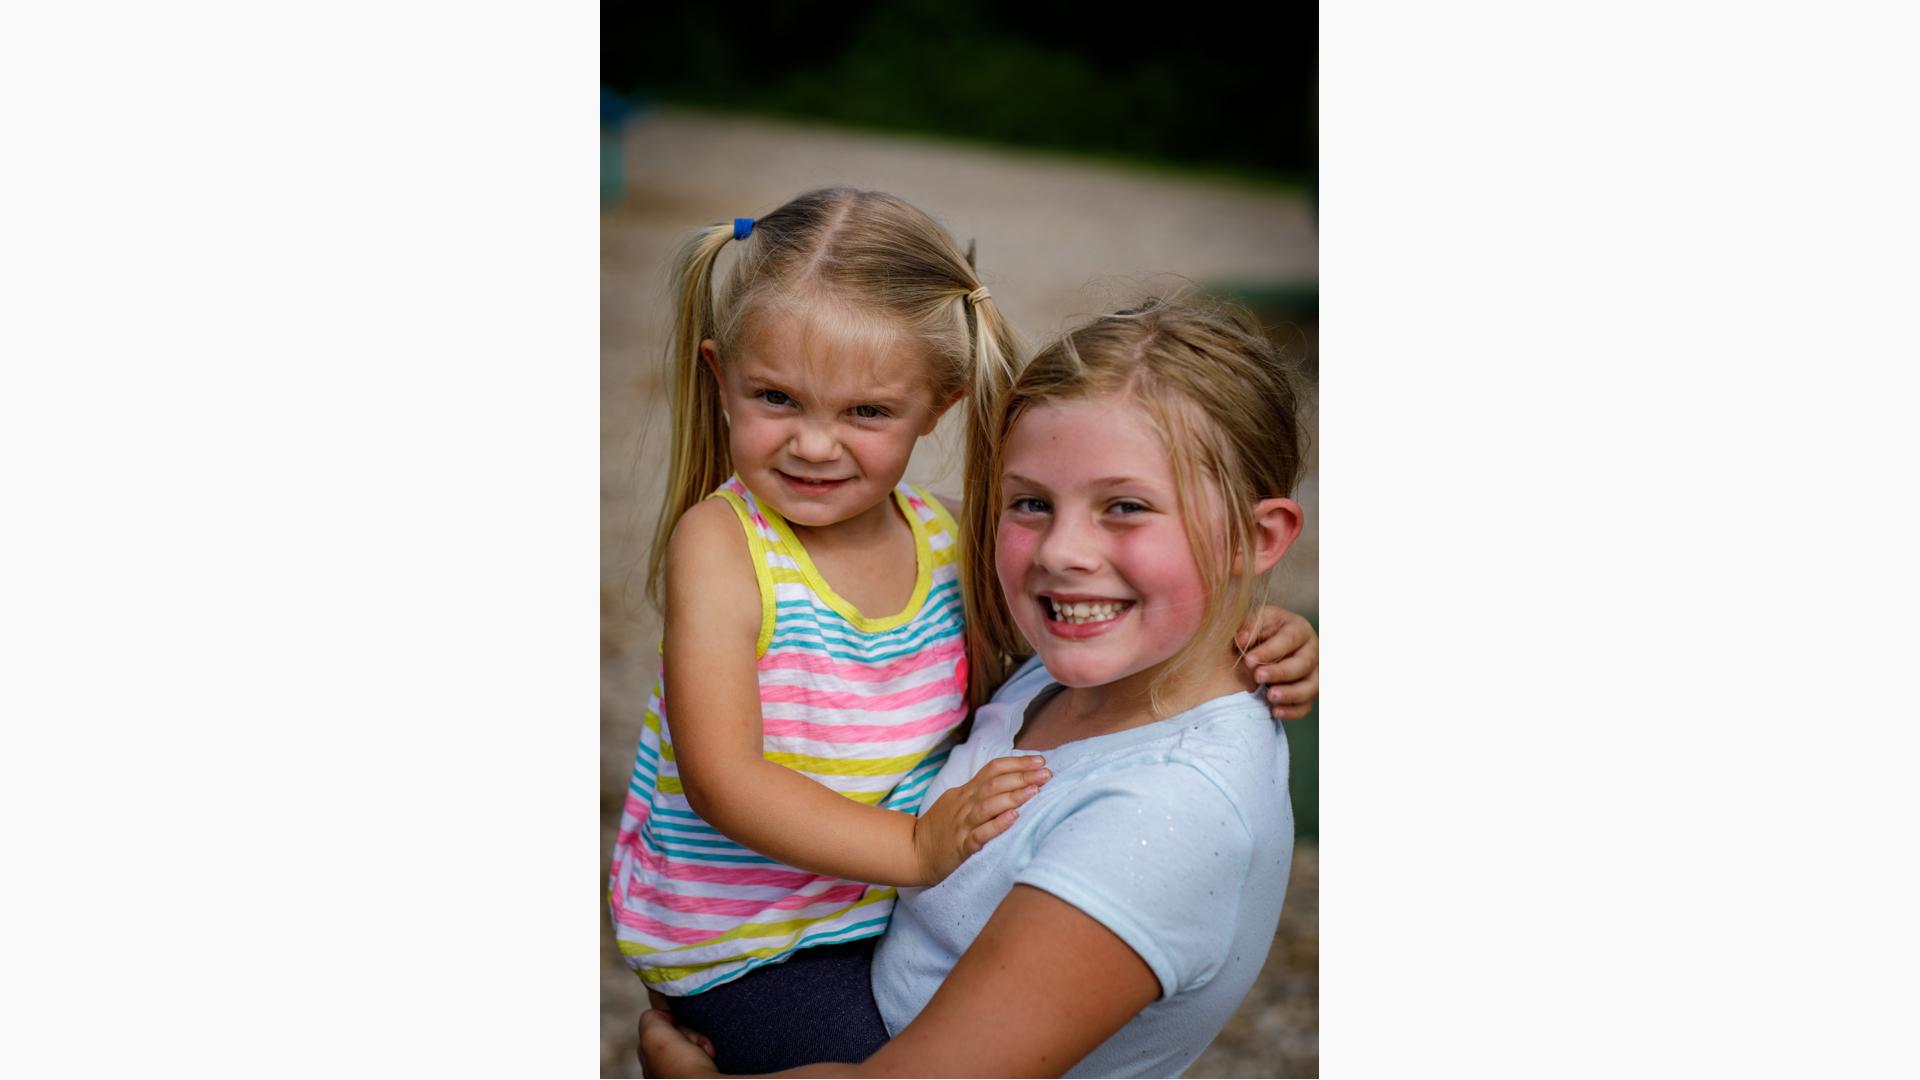 Girl in white shirt smiles as she holds little girl in striped shirt.